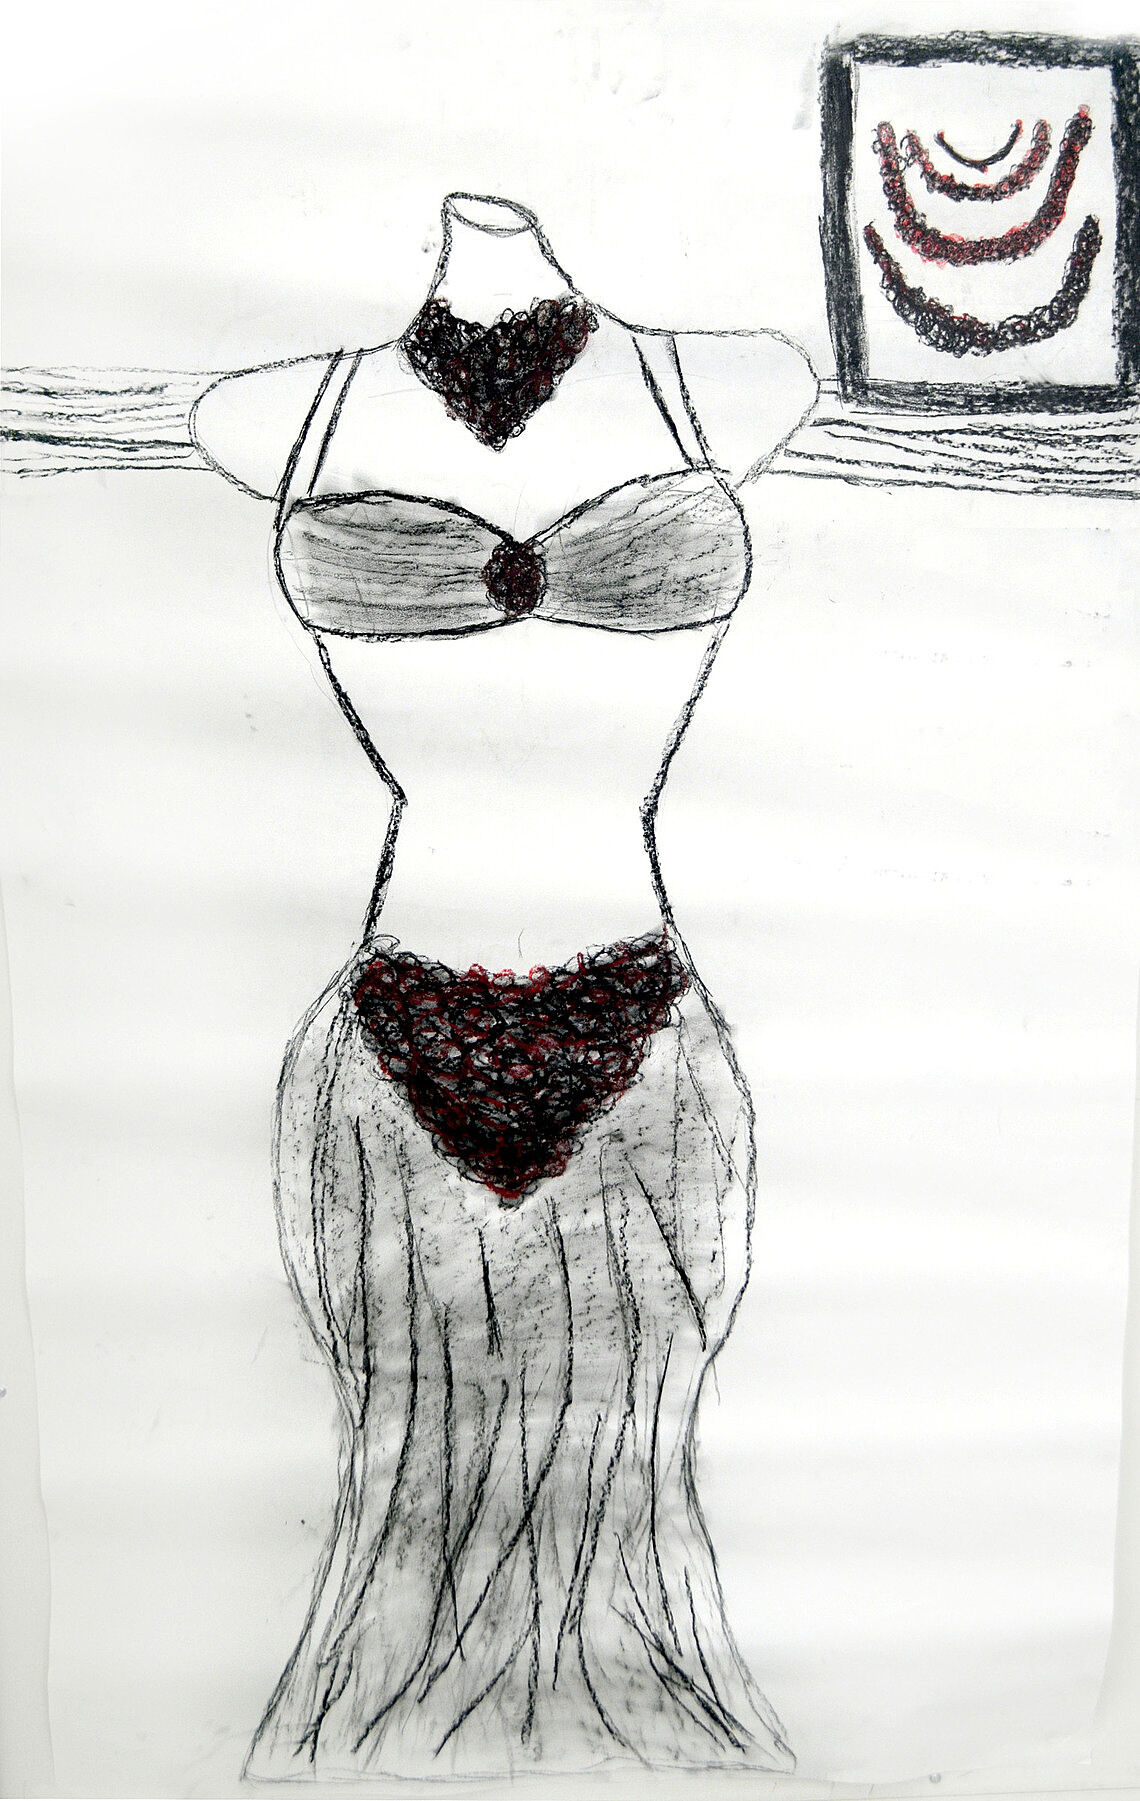 Drawing of a bikini-style dress.